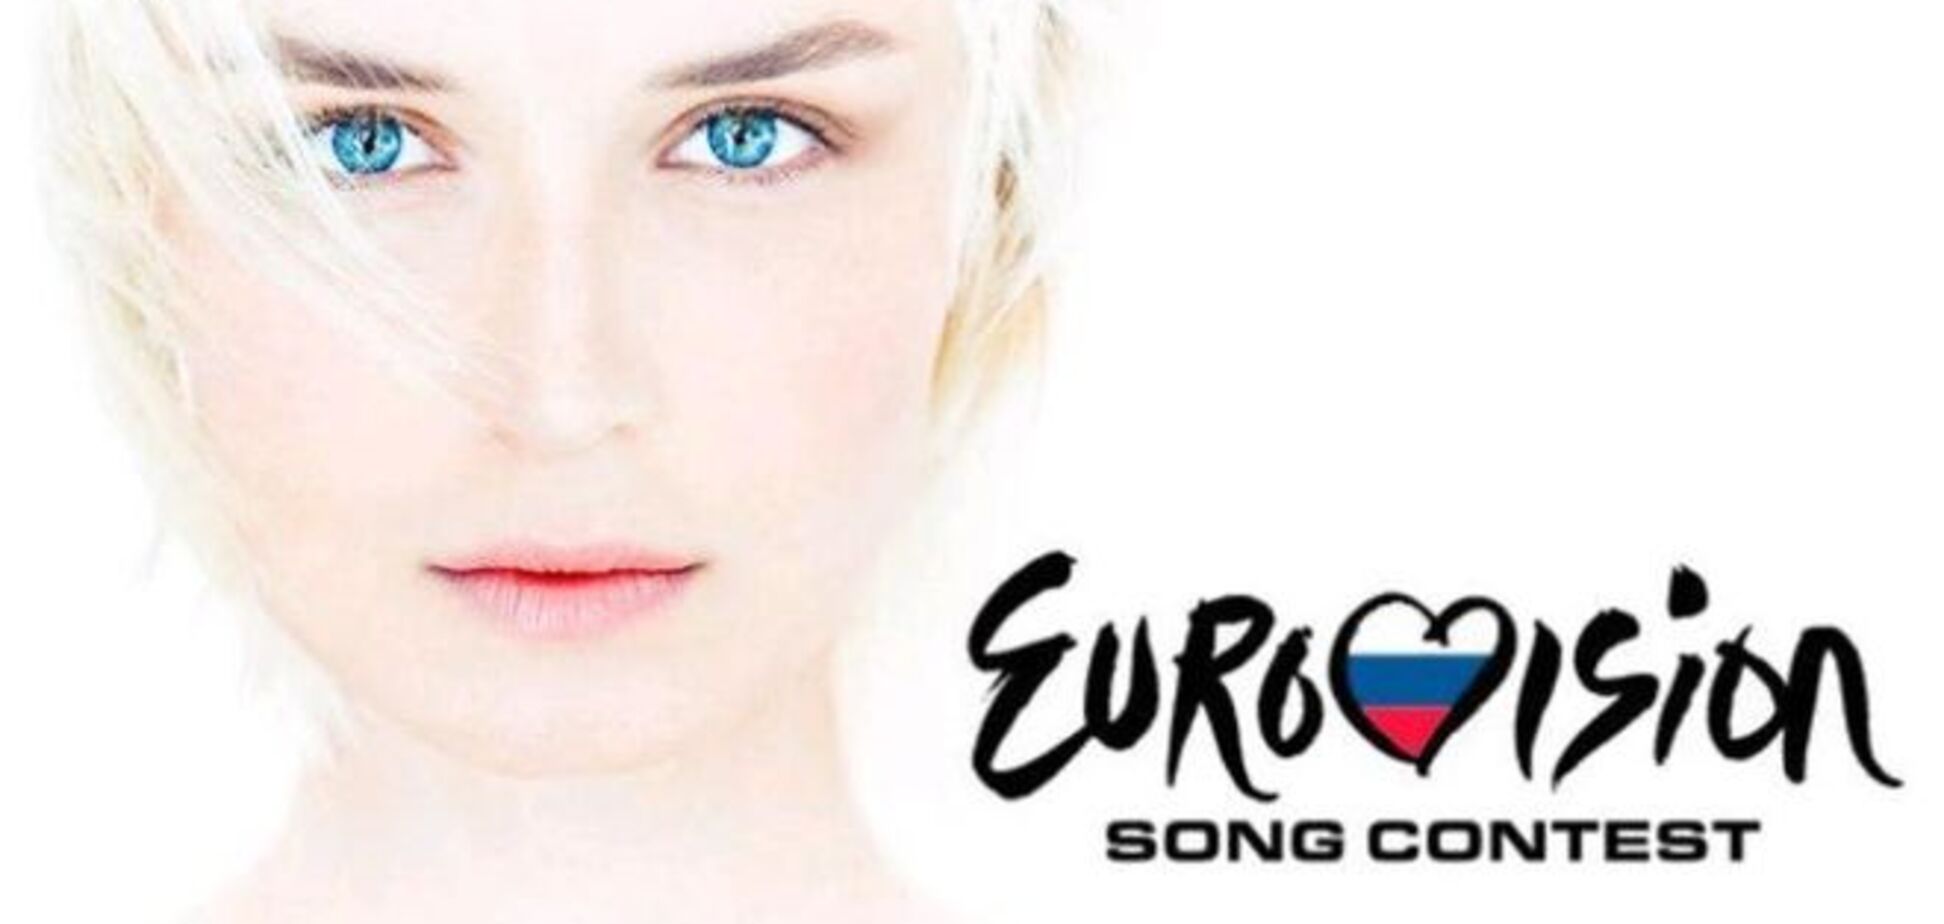 Какая ирония: участница от России споет на 'Евровидении' песню о...мире